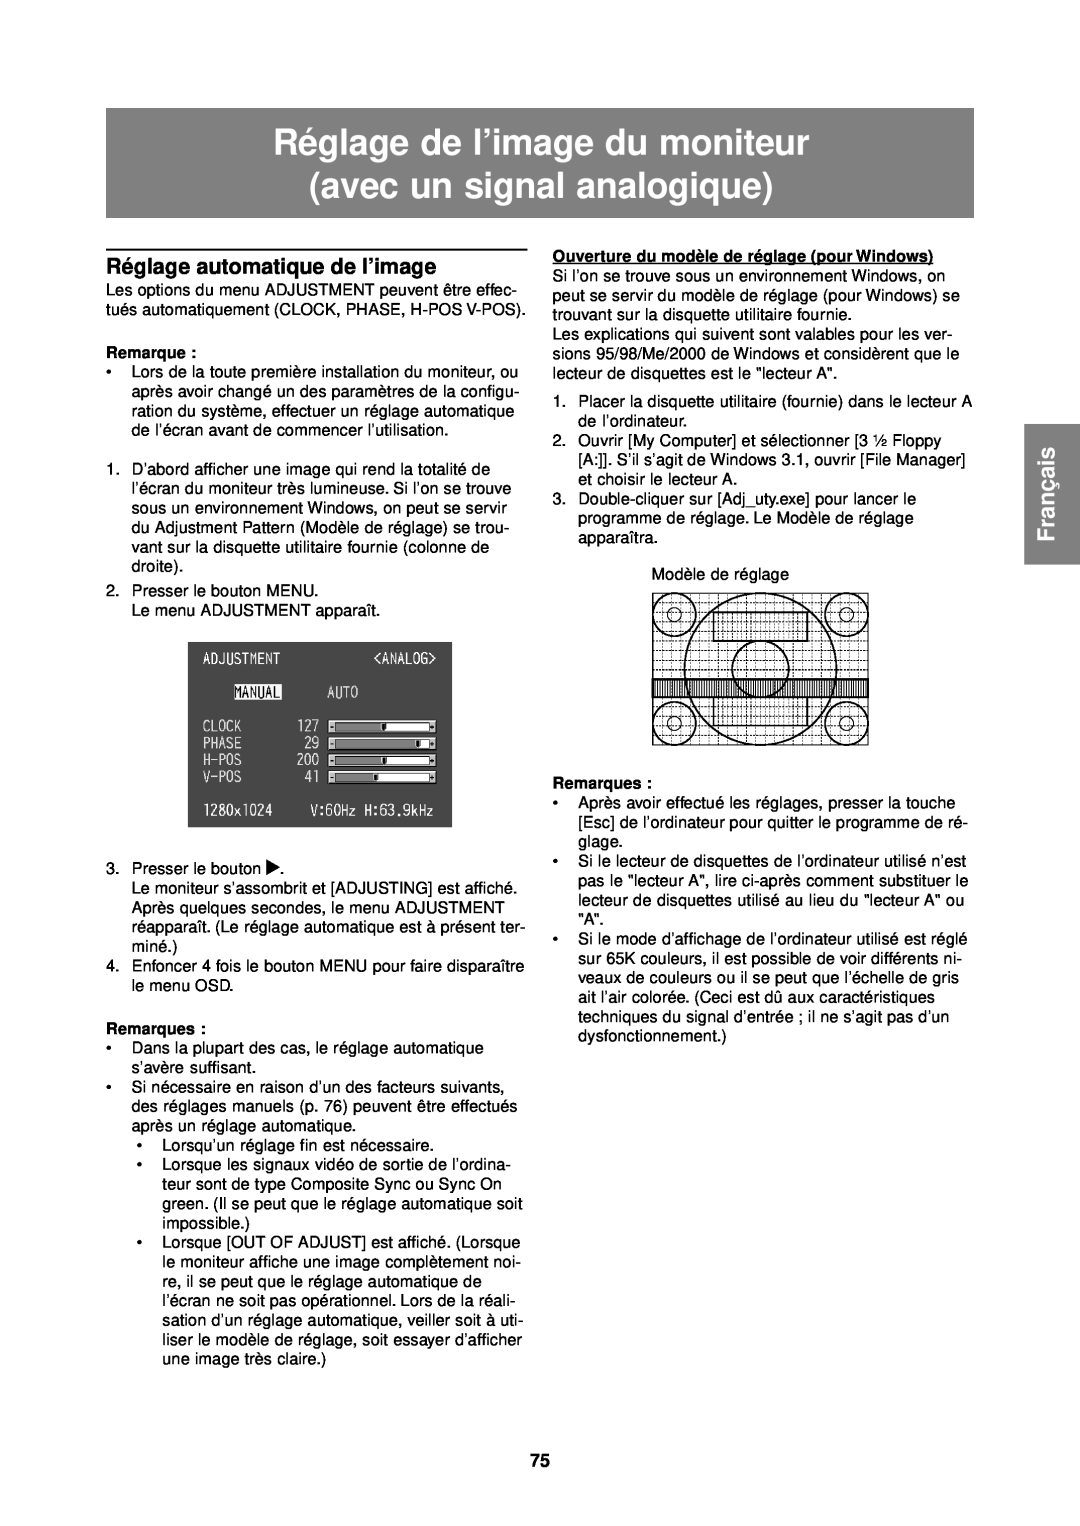 Sharp LL-T1610W Réglage de l’image du moniteur avec un signal analogique, Réglage automatique de l’image, Français 